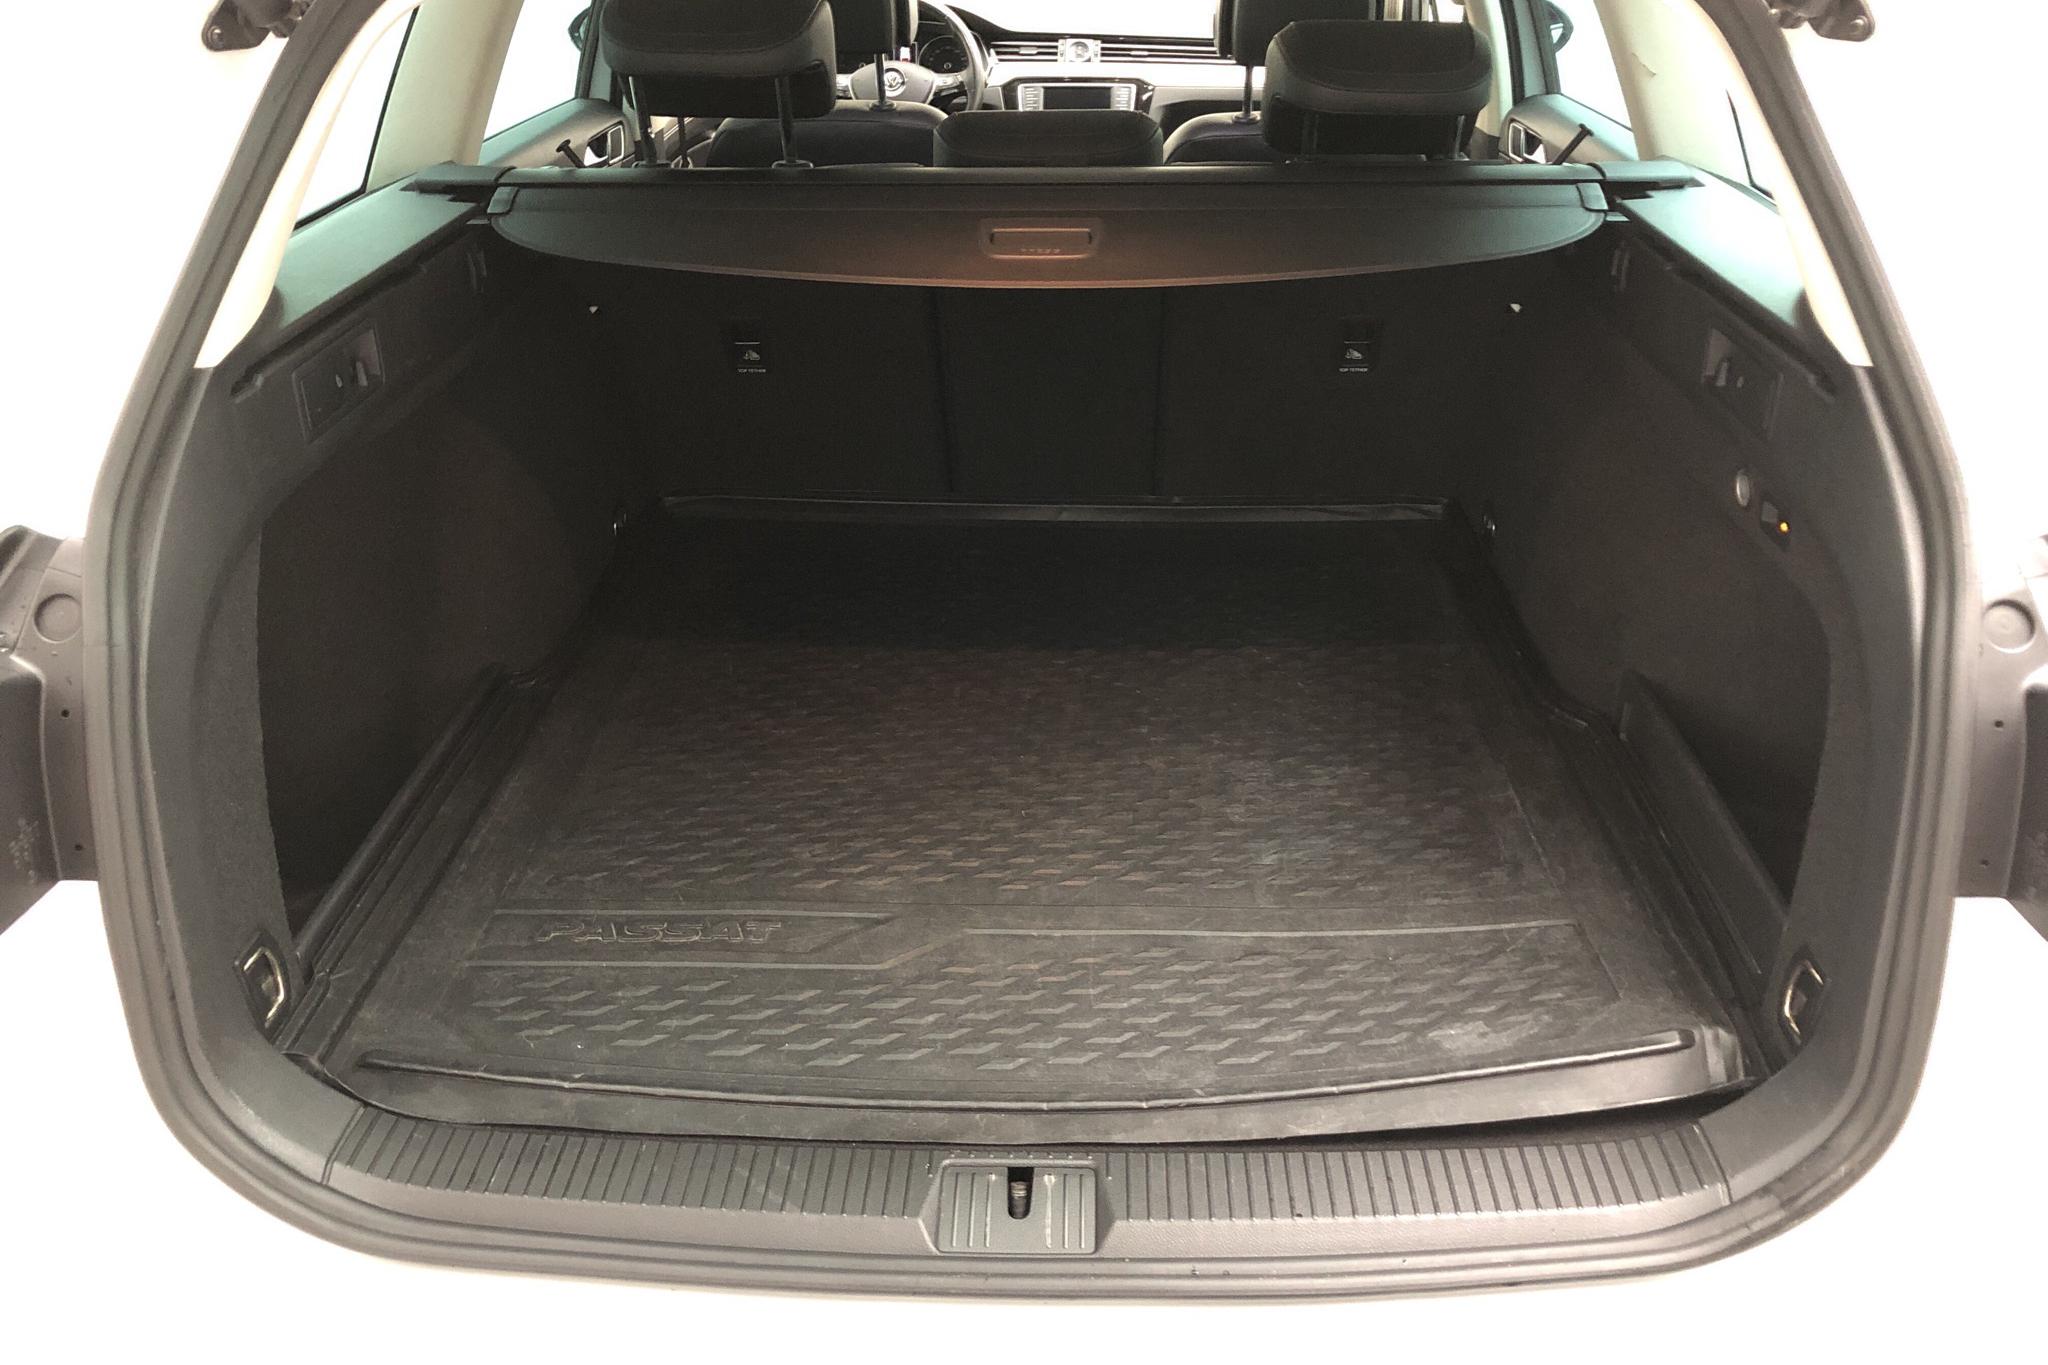 VW Passat 2.0 TDI Sportscombi 4MOTION (190hk) - 18 288 mil - Automat - vit - 2016